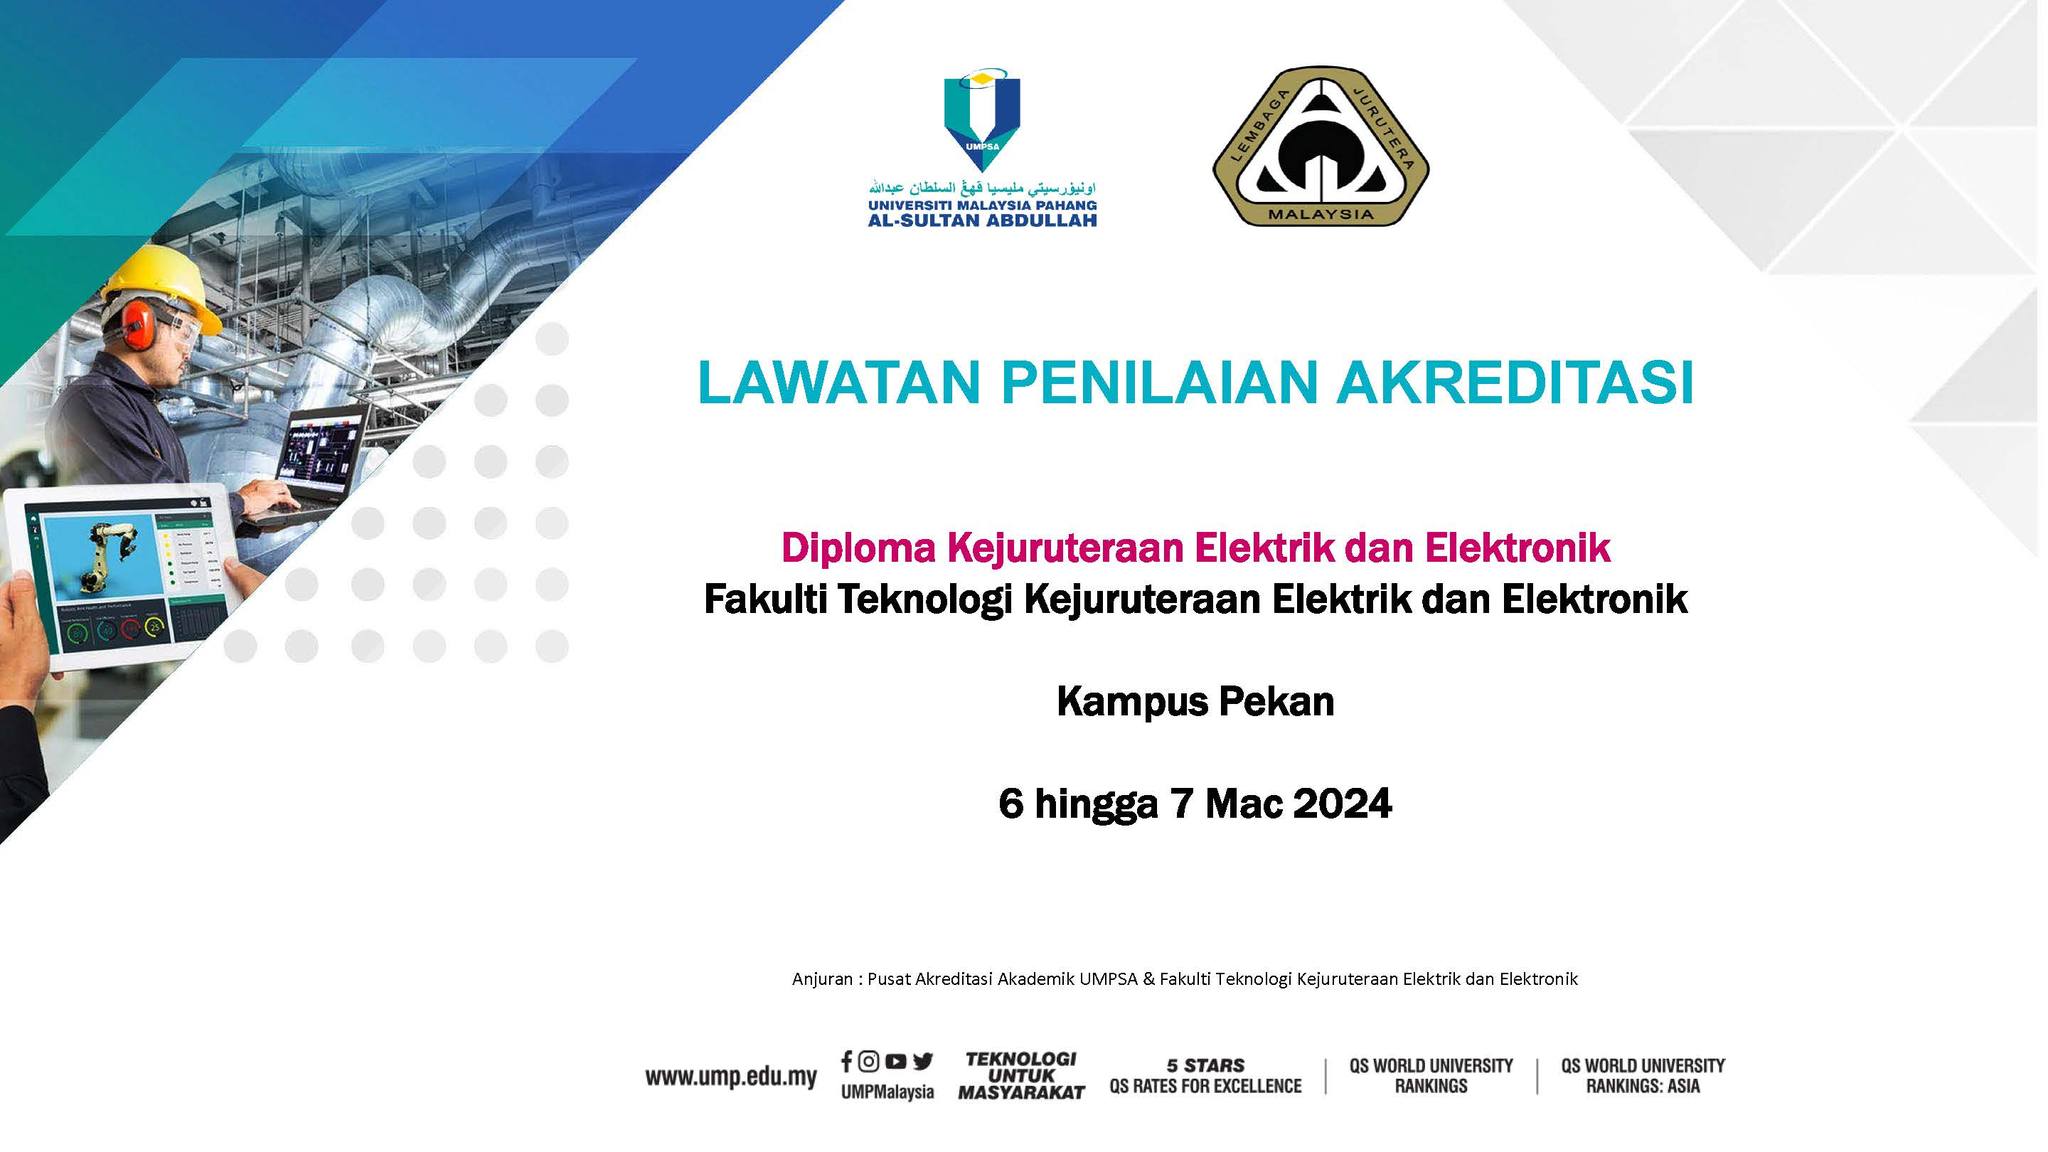 Lawatan Penilaian Akreditasi bagi Program Diploma Kejuruteraan Elektrik dan Elektronik FTKEE UMPSA